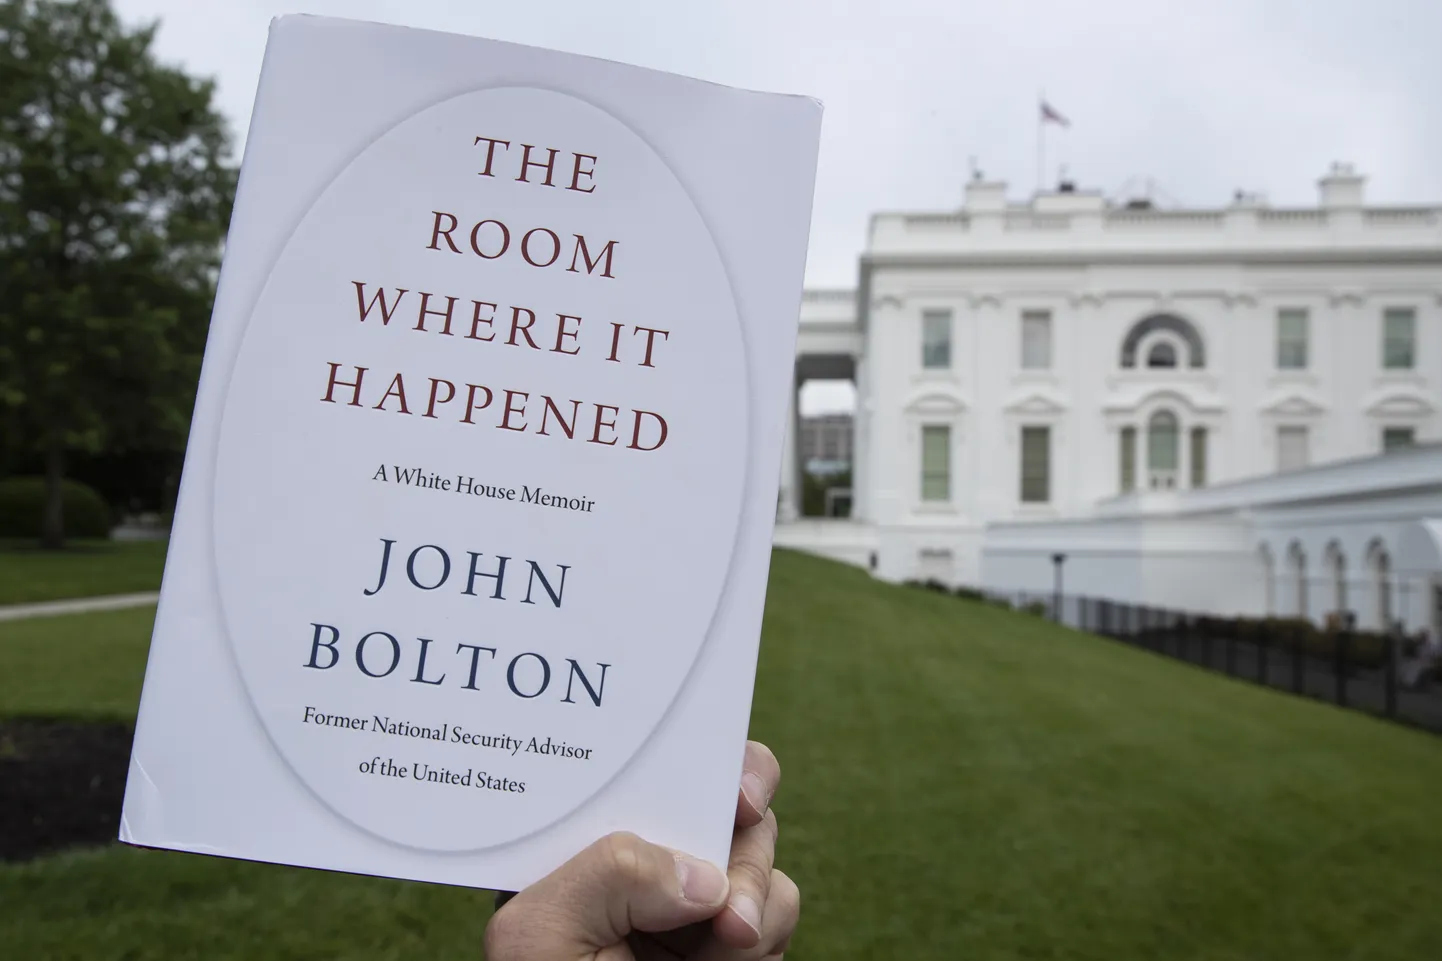 John Boltoni kirjutatud teose koopia.